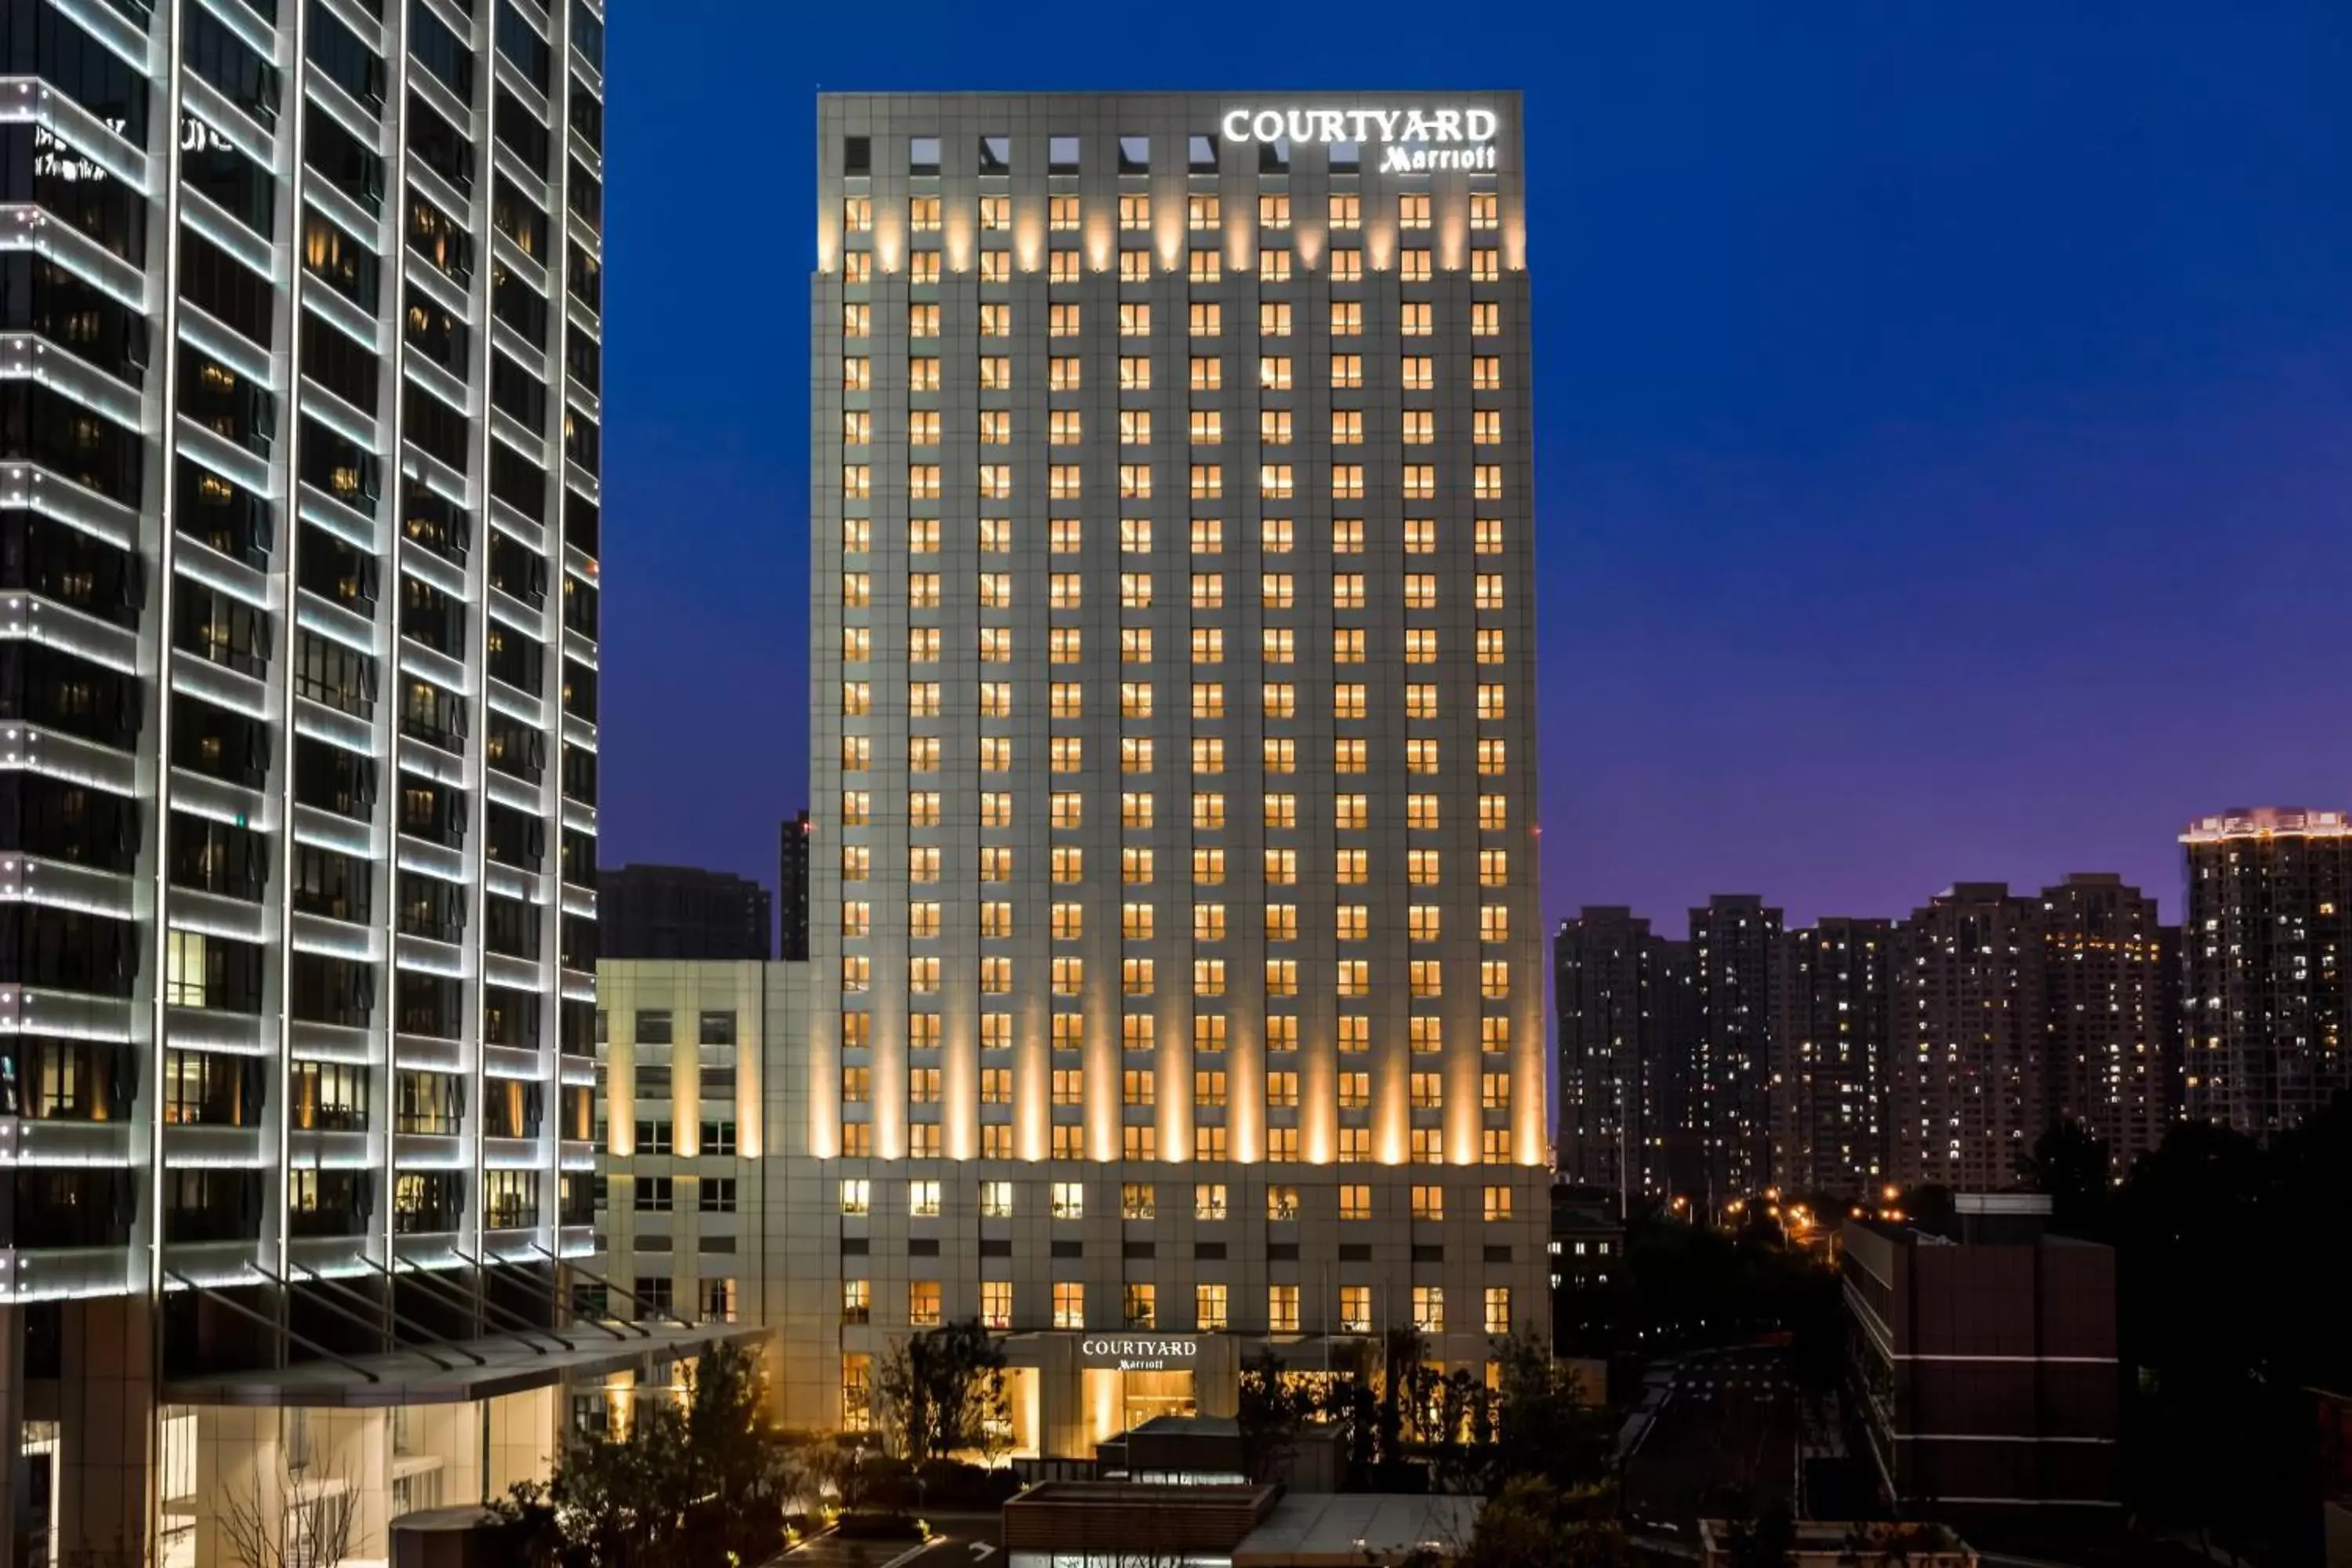 Property Building in Courtyard by Marriott Tianjin Hongqiao